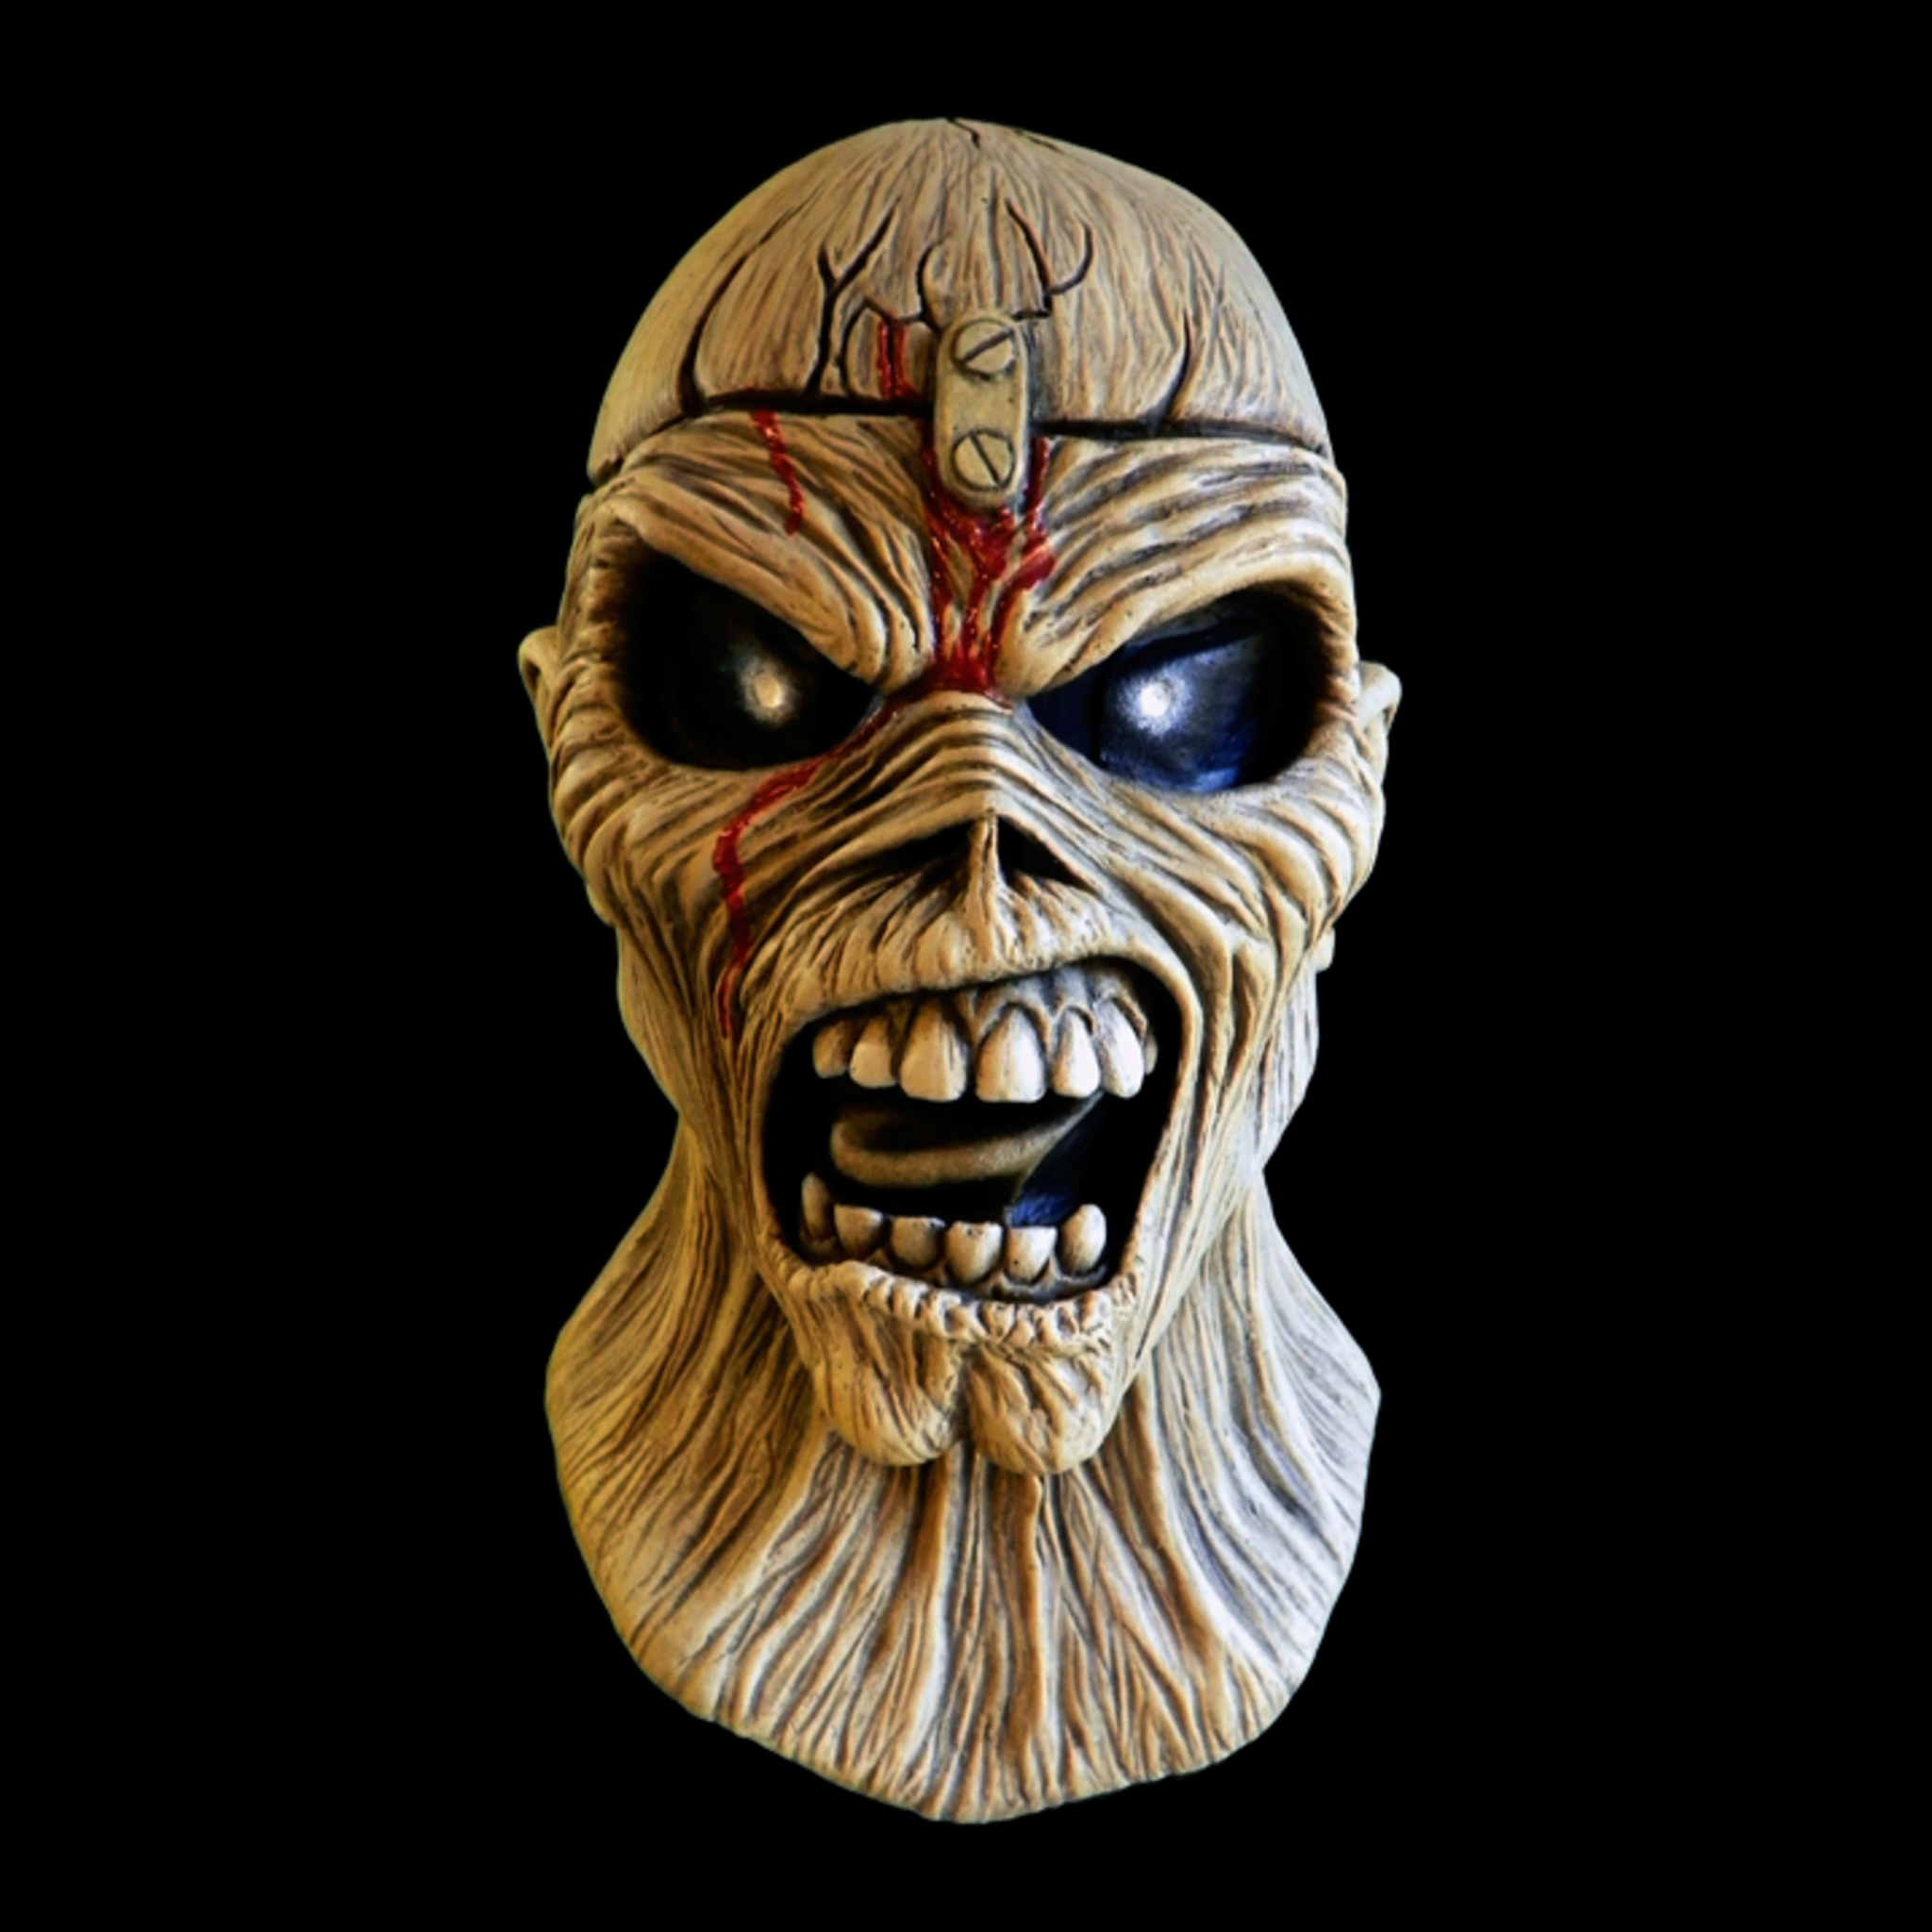 Iron Maiden "Eddie" - Piece of Mind Halloween Mask - Metalhead Art & Design, LLC 